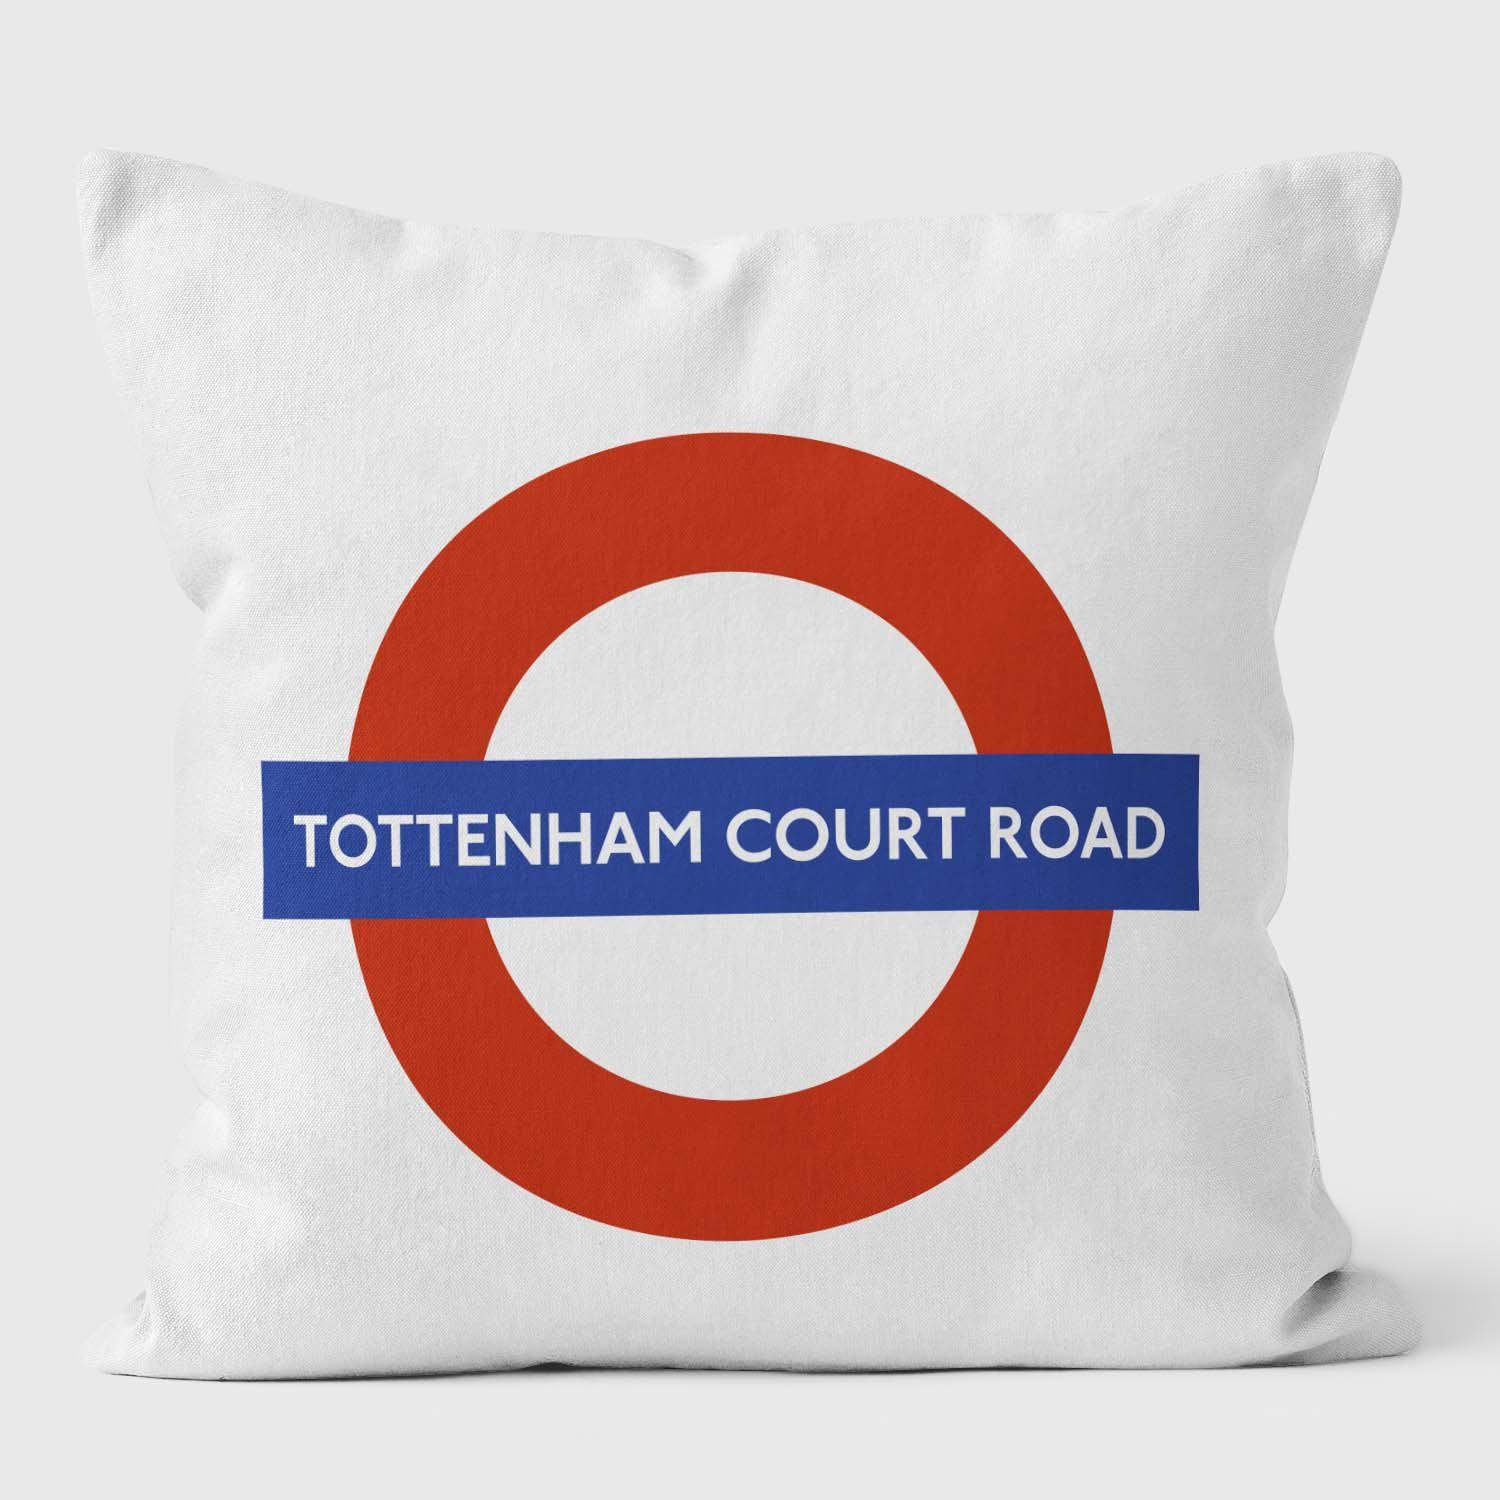 Tottenham Court Road London Underground Tube Station Roundel Cushion - Handmade Cushions UK - WeLoveCushions